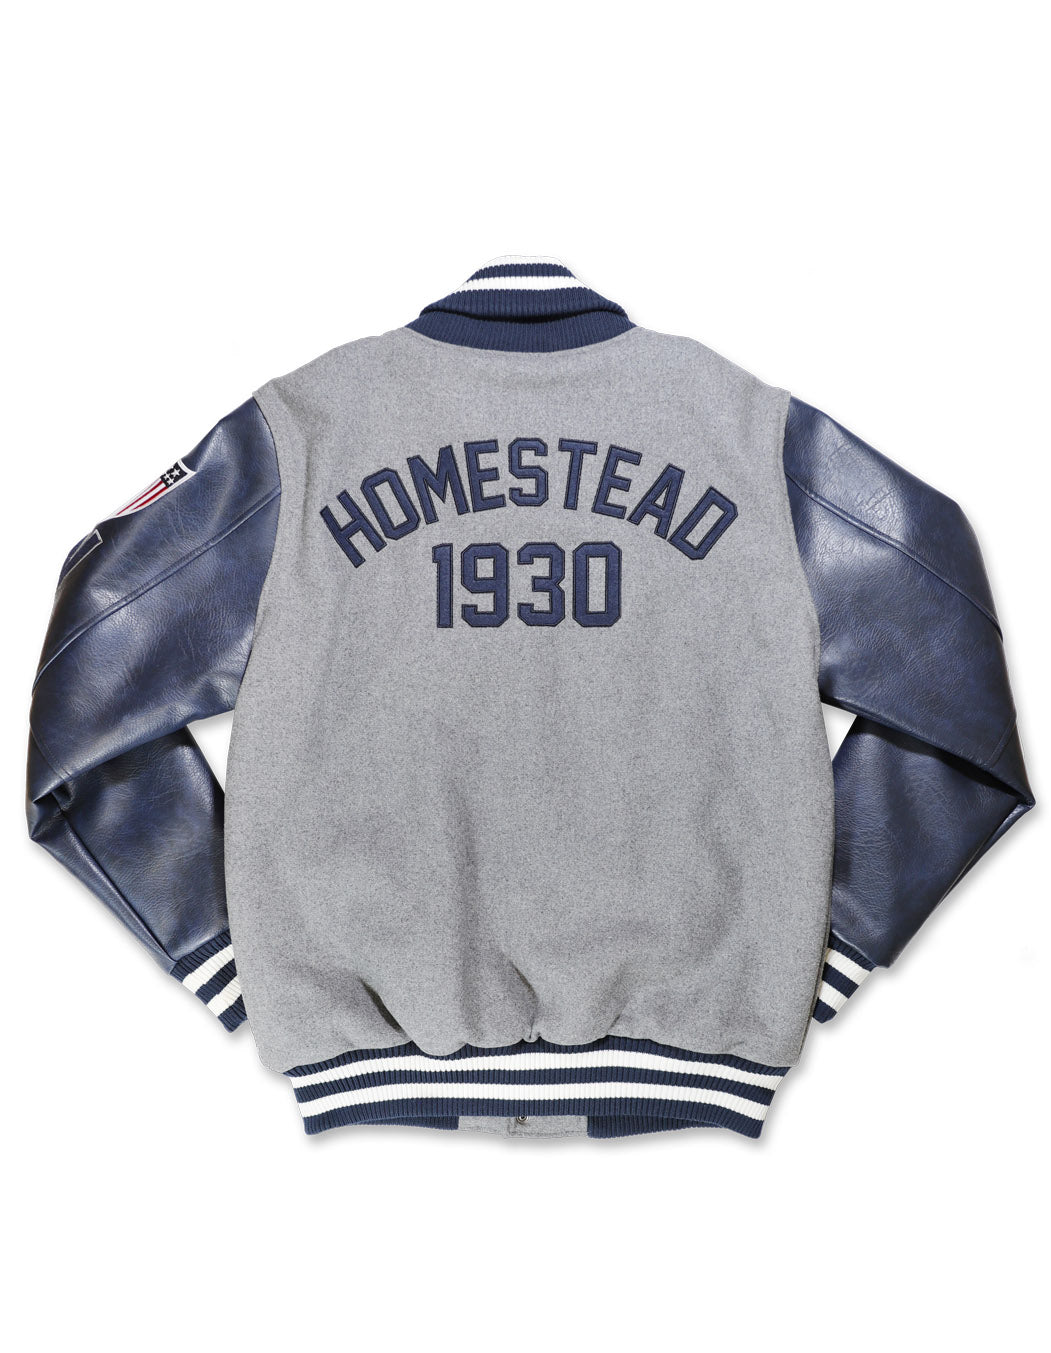 Homestead Grays Wool Jacket